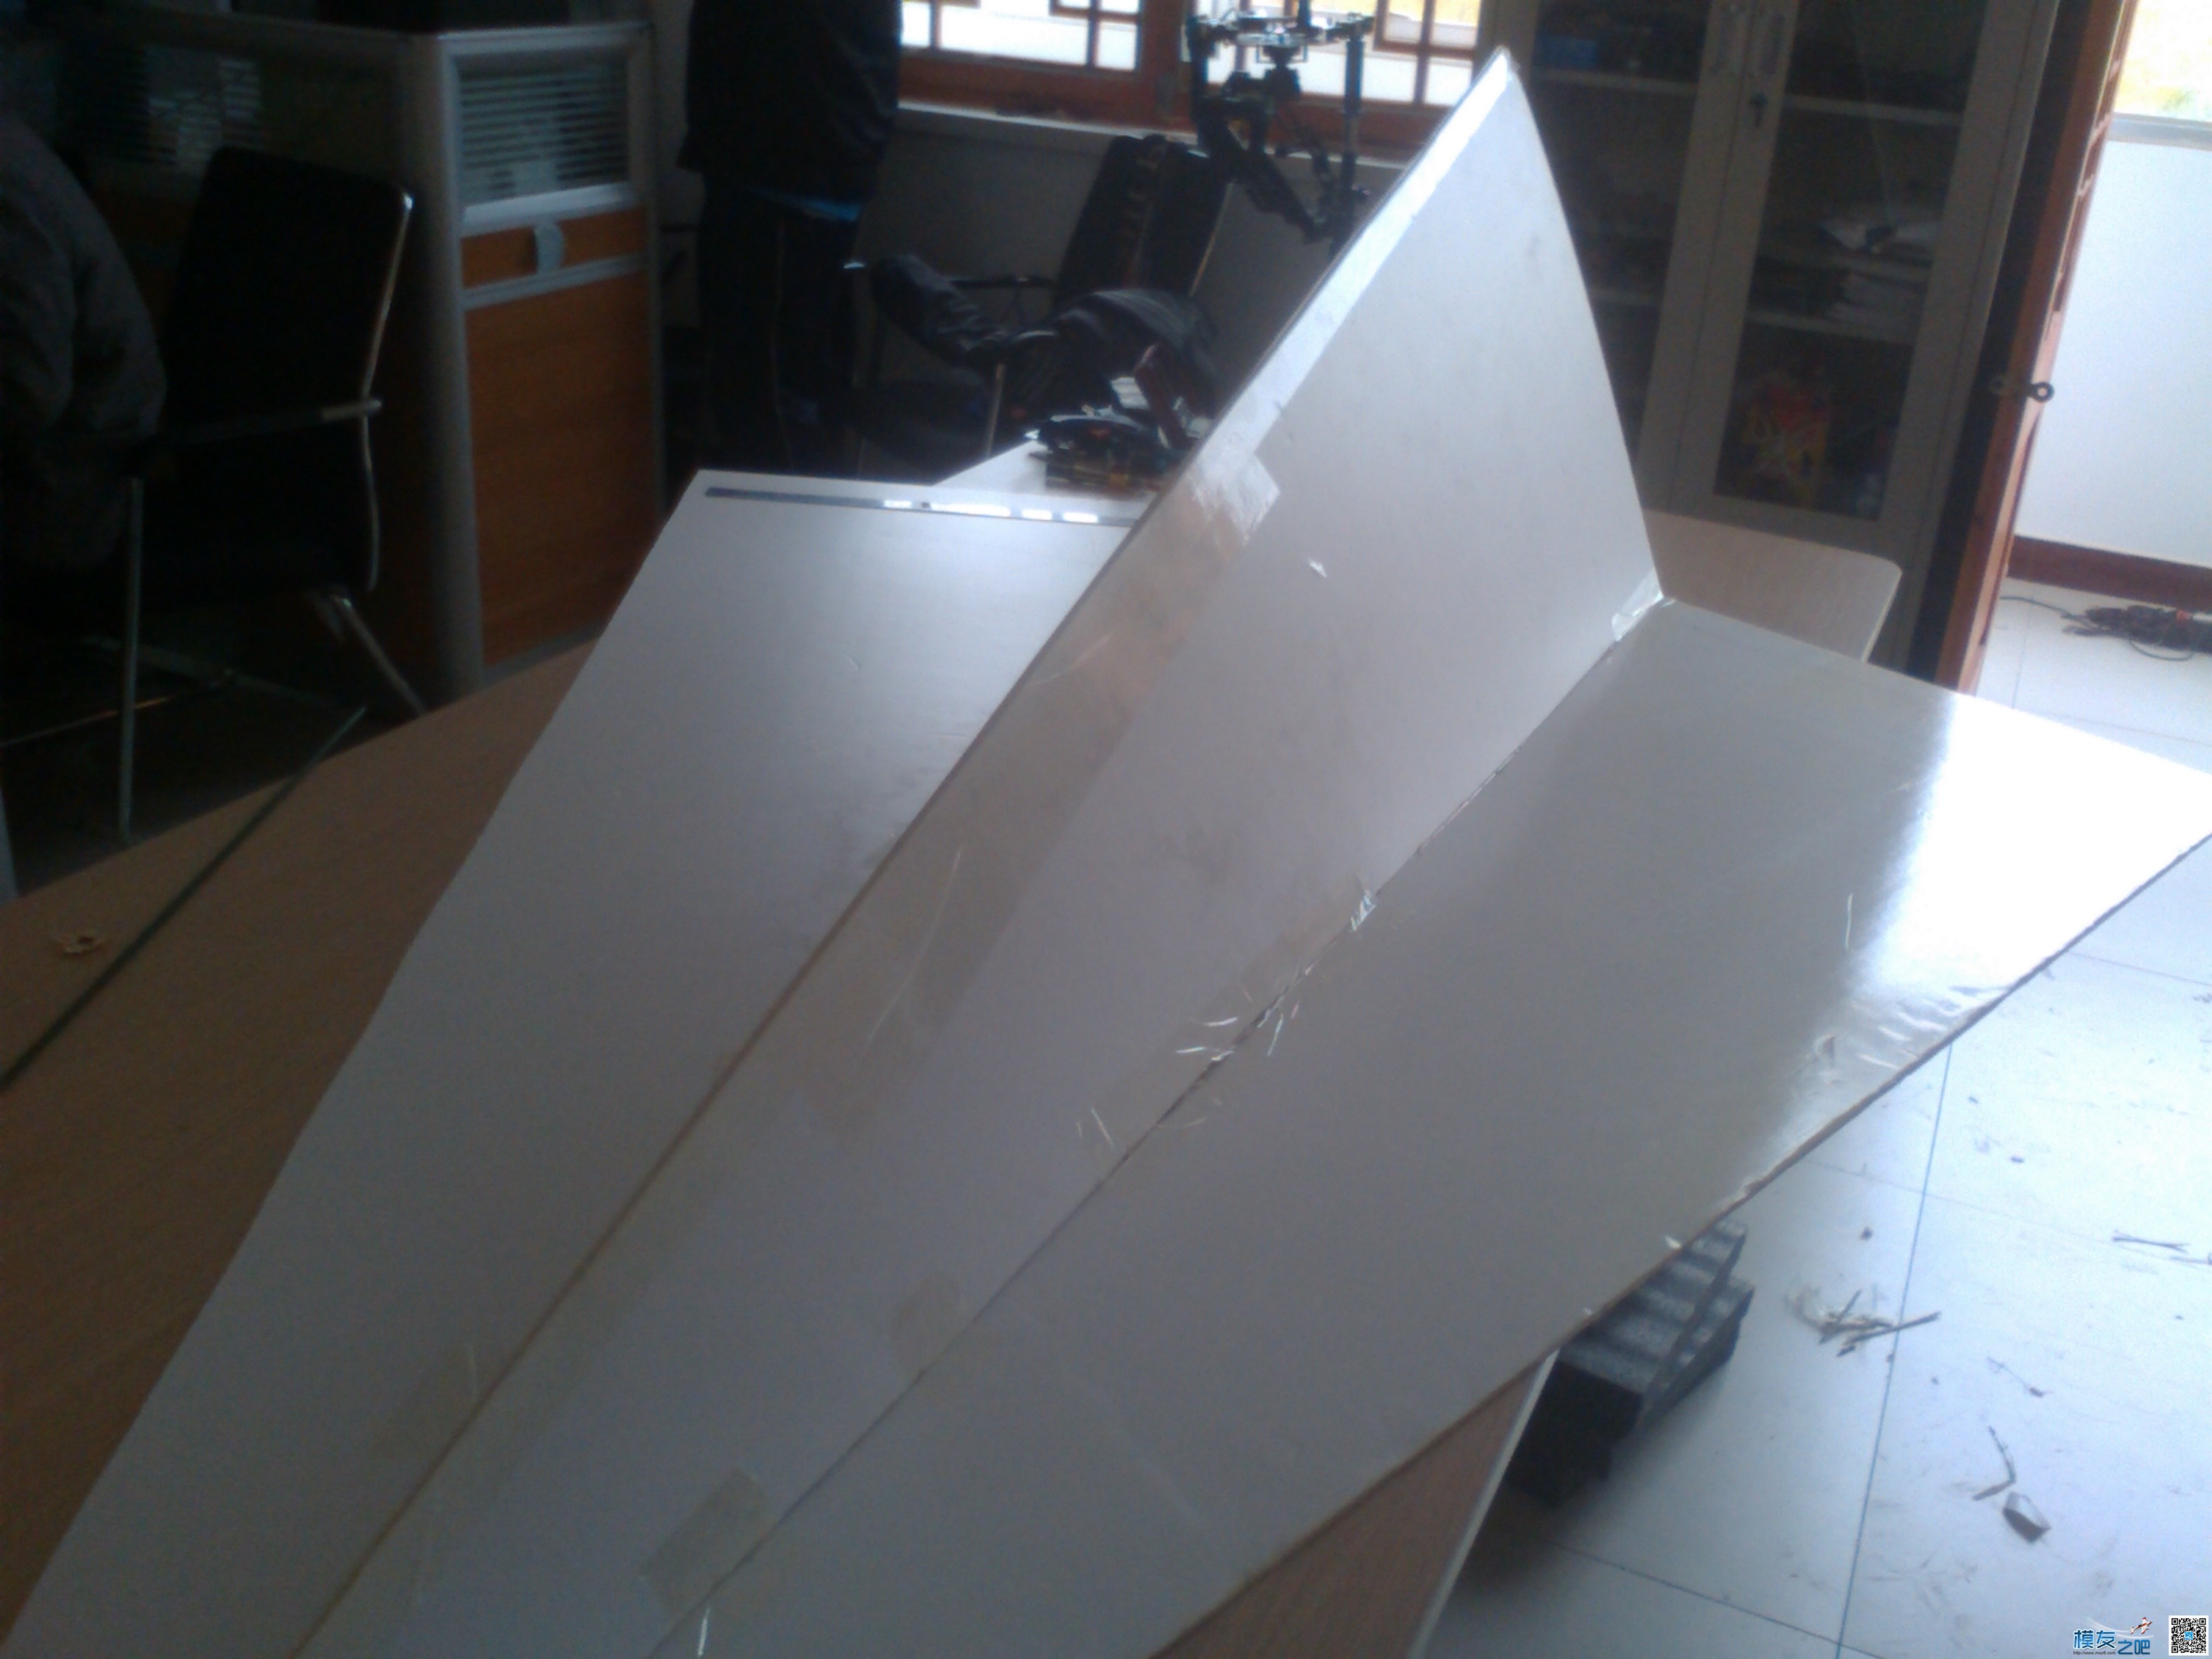 2.4米 纸飞机试飞成功 纸飞机,米纸,飞机,试飞,成功 作者:莒县模型吧 4806 